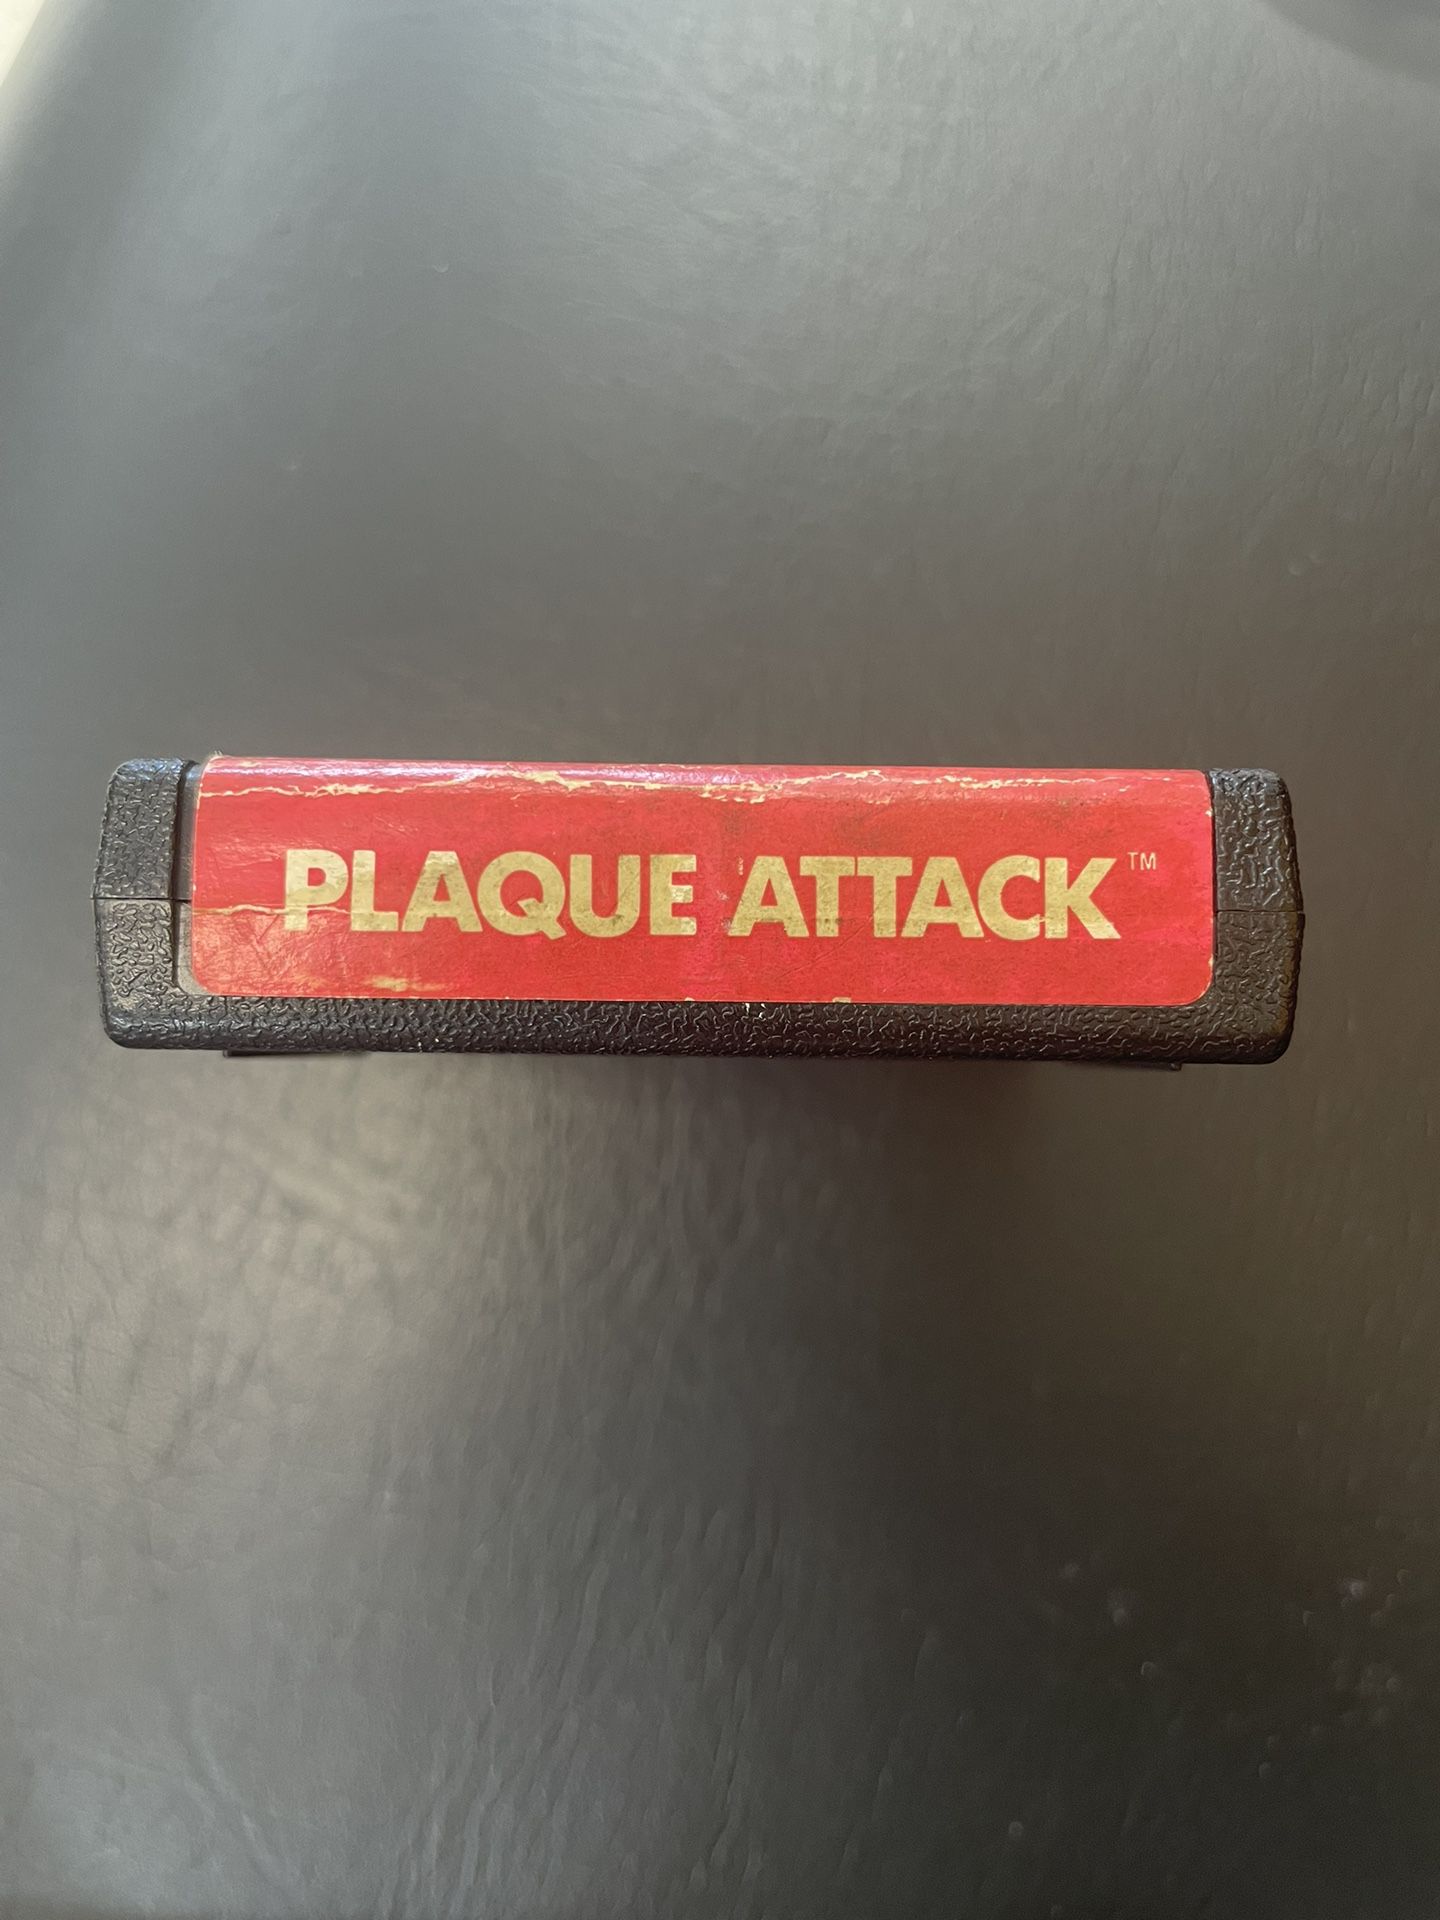 Atari 2600 plaque attack Game cartridge